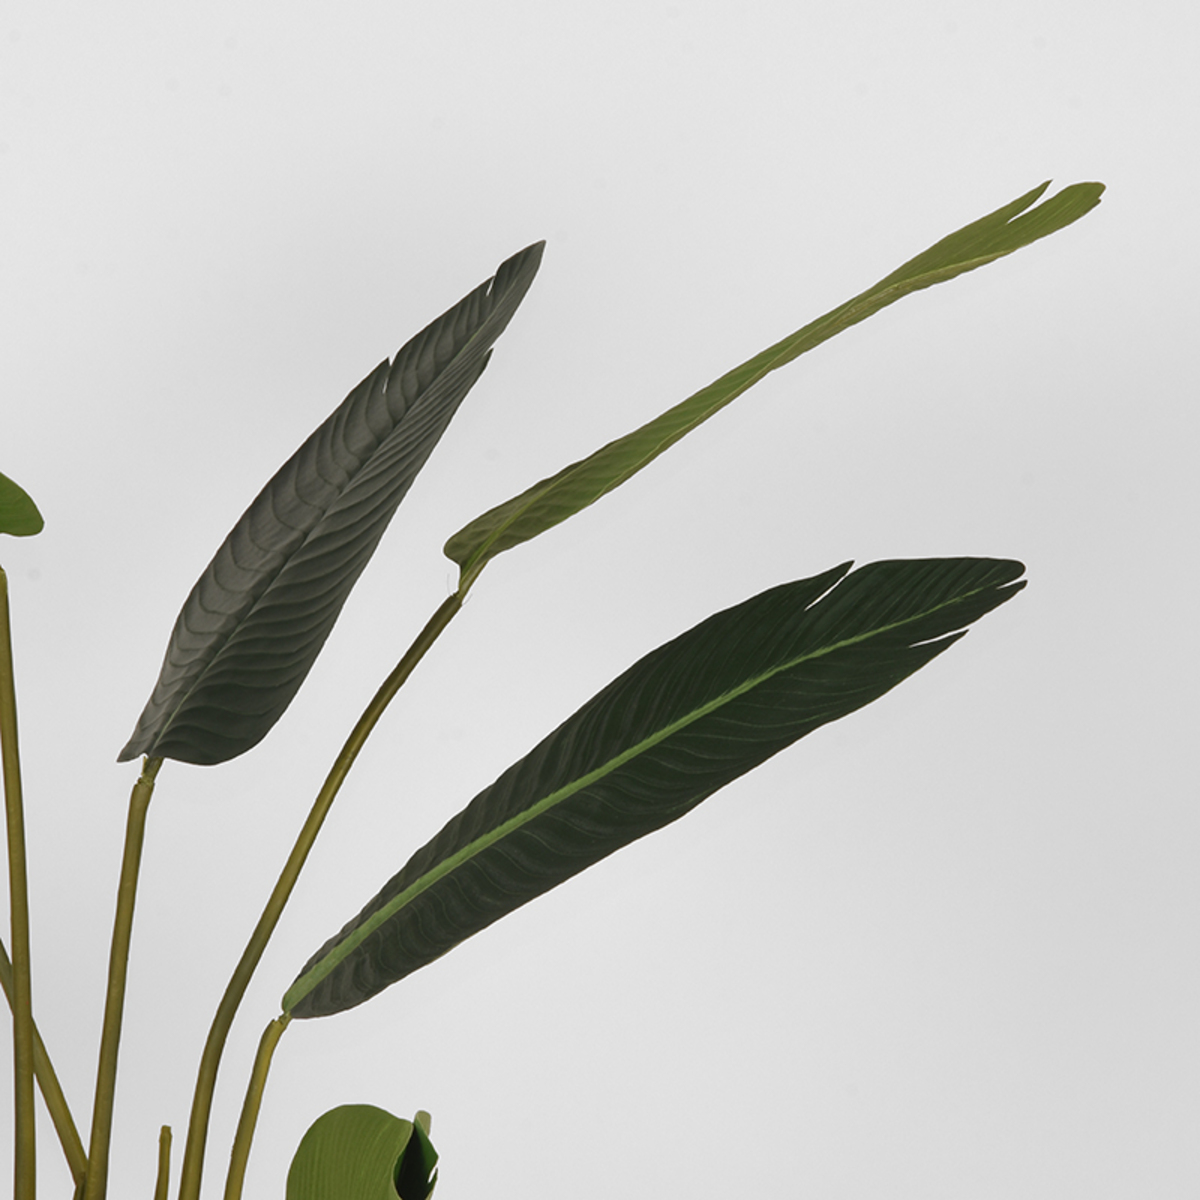 Kunstplant Strelitzia - Groen - 100 cm